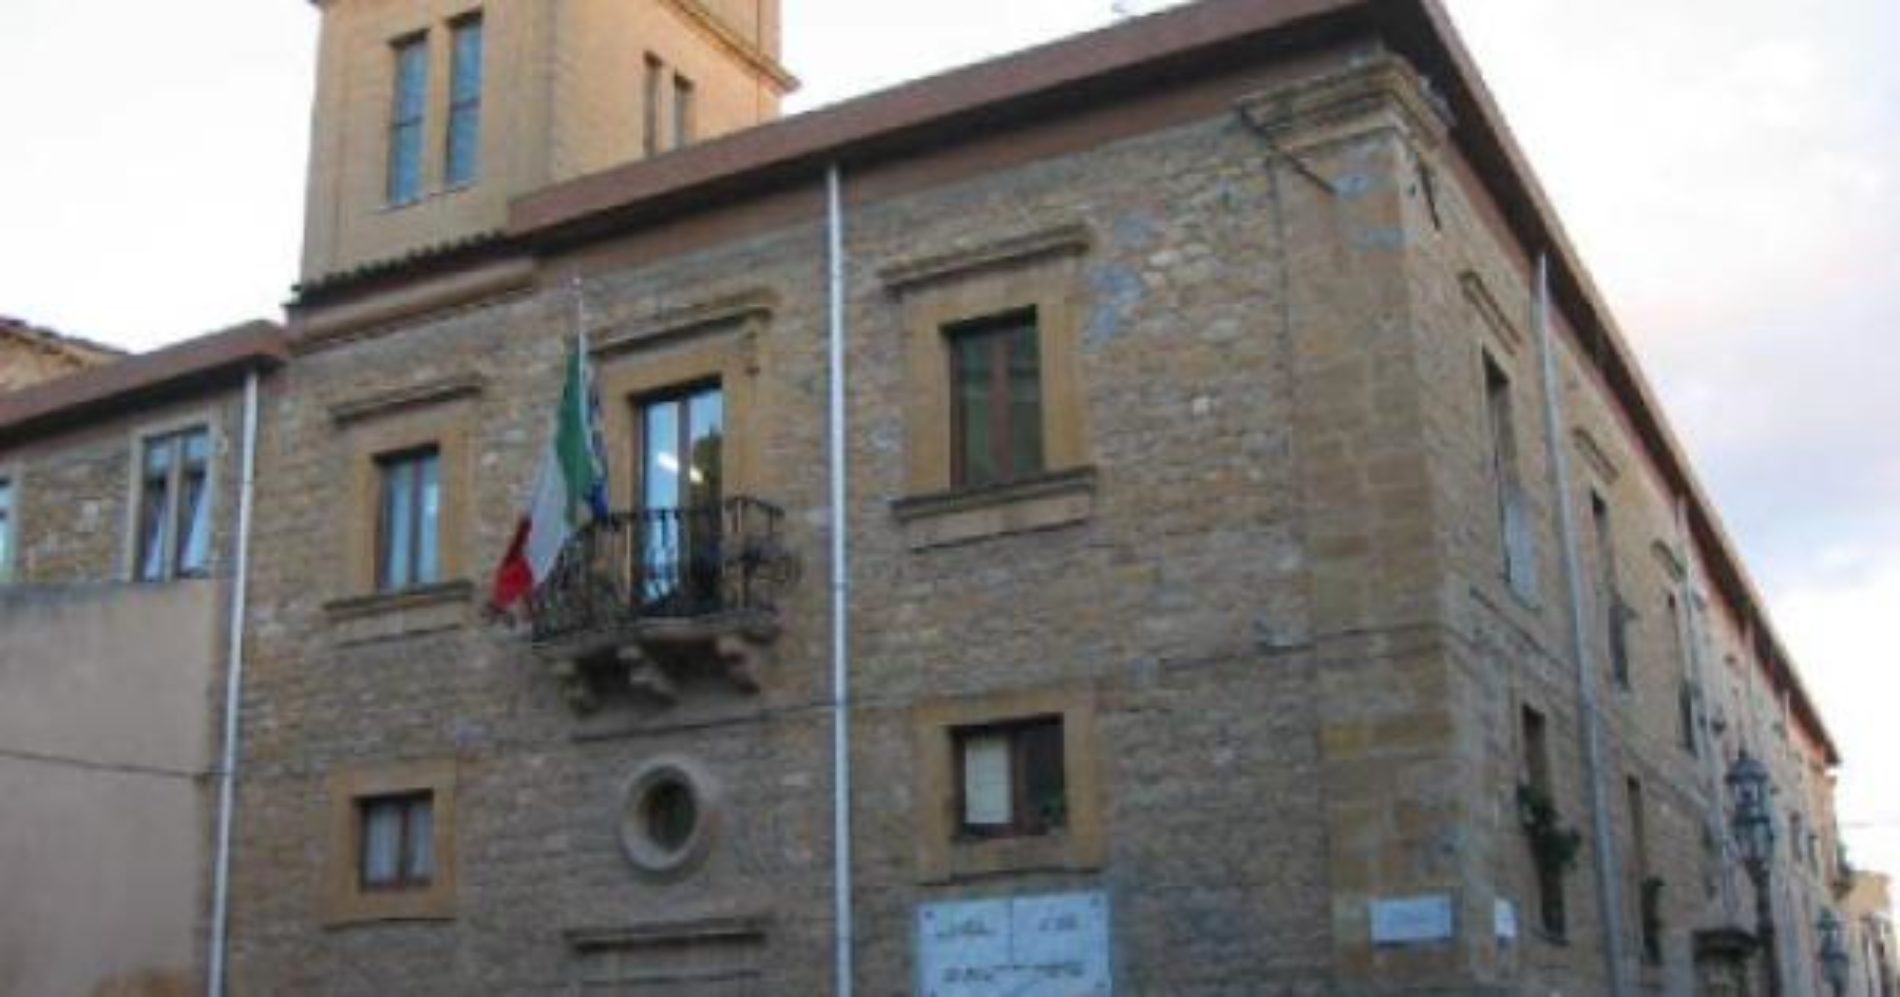 PIETRAPERZIA. Zona rossa prorogata fino al 28 aprile 2021 per Pietraperzia e per altri 28 comuni siciliani. Per altri quattro comuni della Sicilia zona rossa dal 24 aprile al 5 maggio.